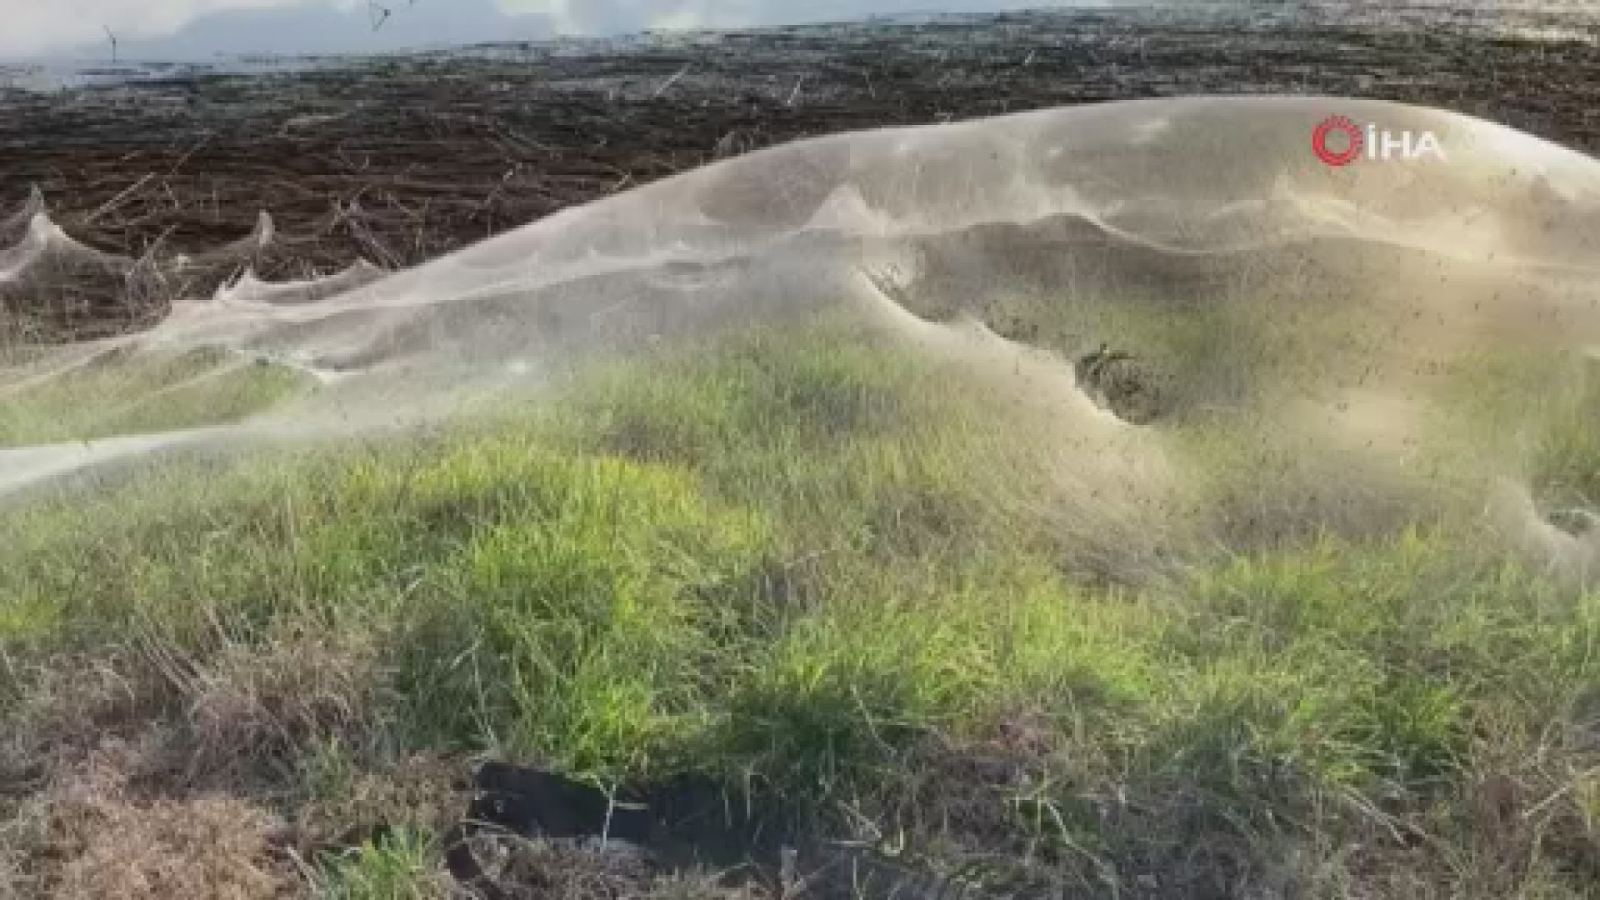 Avusturalya’da sel bölgesini dev örümcek ağları kapladı